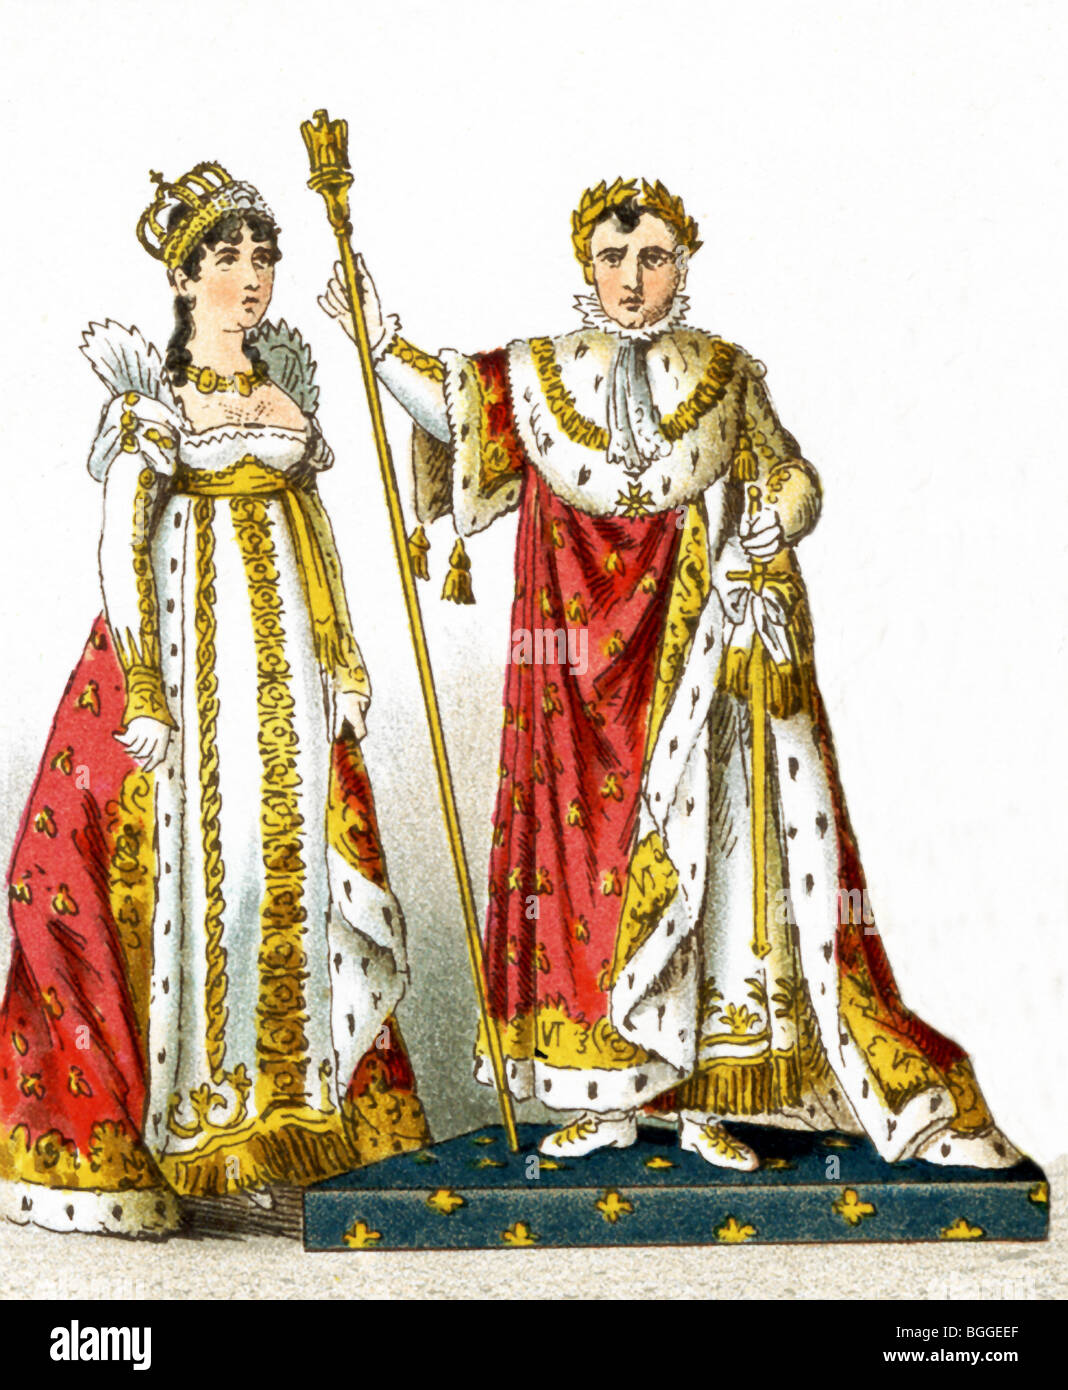 Qui rappresentati sono il francese imperatrice Giuseppina e Napoleone I nel suo Coronation vesti nel 1804. L'illustrazione risale al 1882. Foto Stock